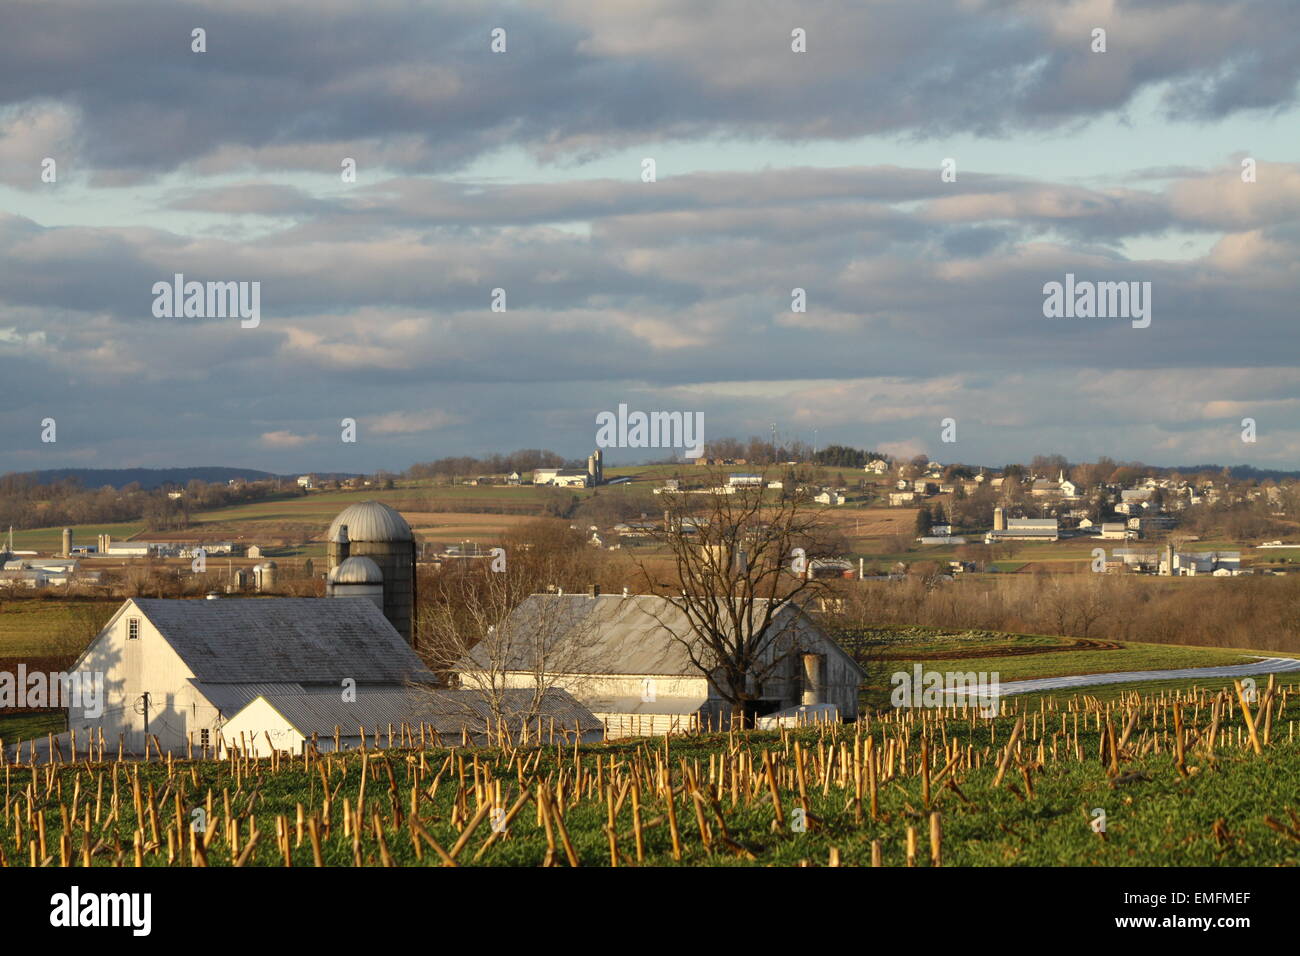 An einem kalten land Wintertag, auf einer hügeligen Anhöhe blickte auf eine ordentlich aussehende Bauernschaft, Gebäude und Ernte. Stockfoto